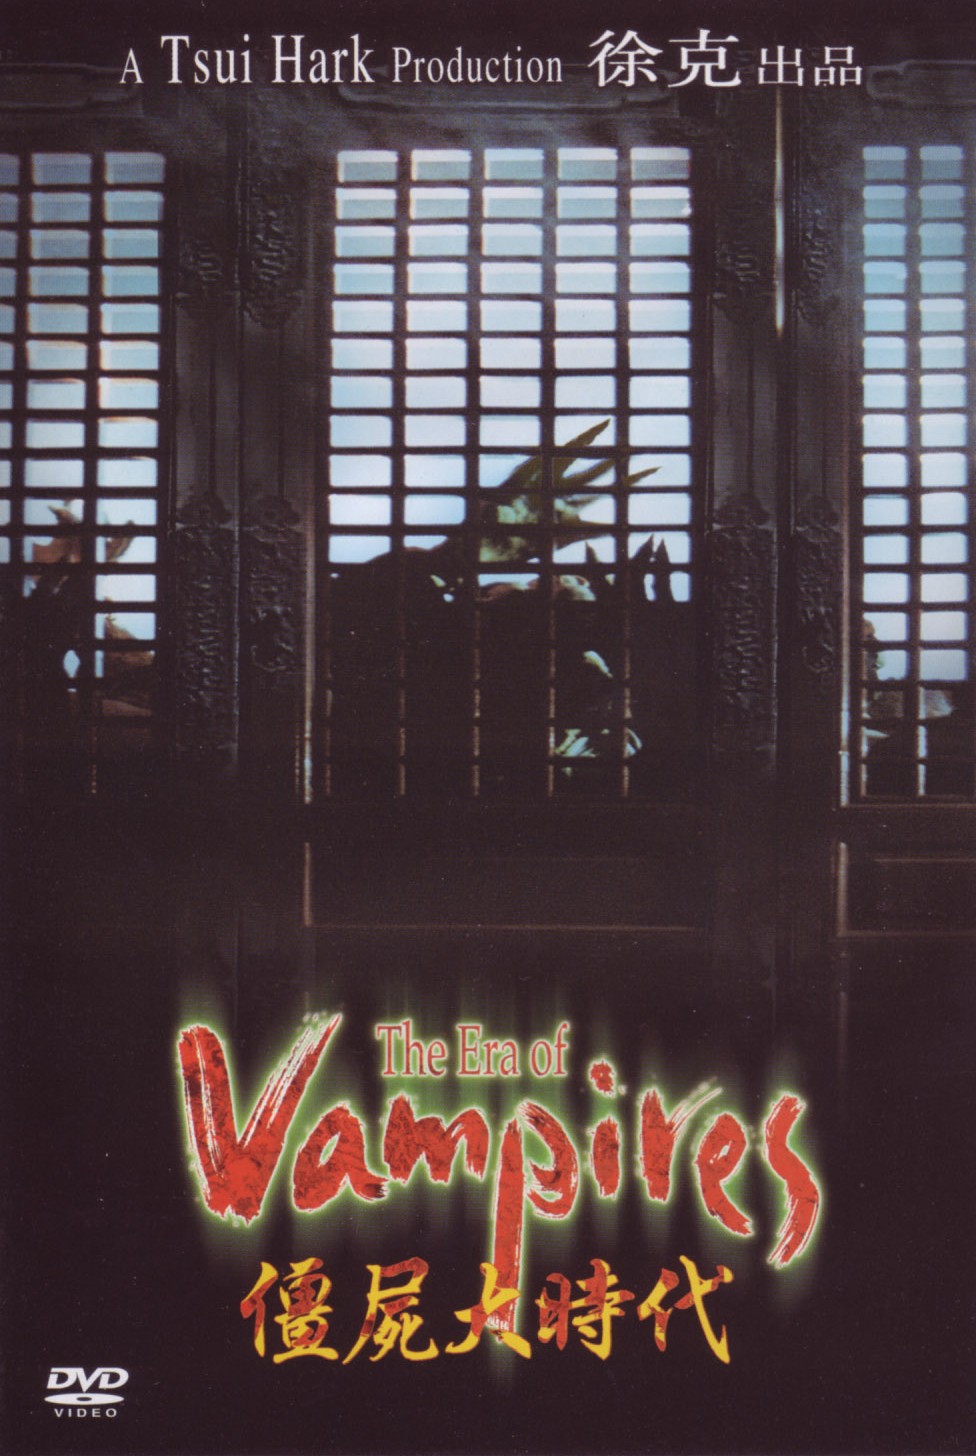 【香港經典電影系列】僵尸大时代 (2002) 粵配中字 The Era of Vampire 2002 Blu-ray 1080p AVC TrueHD 5.1 - MTeam    [22.49 GB]-1.jpg